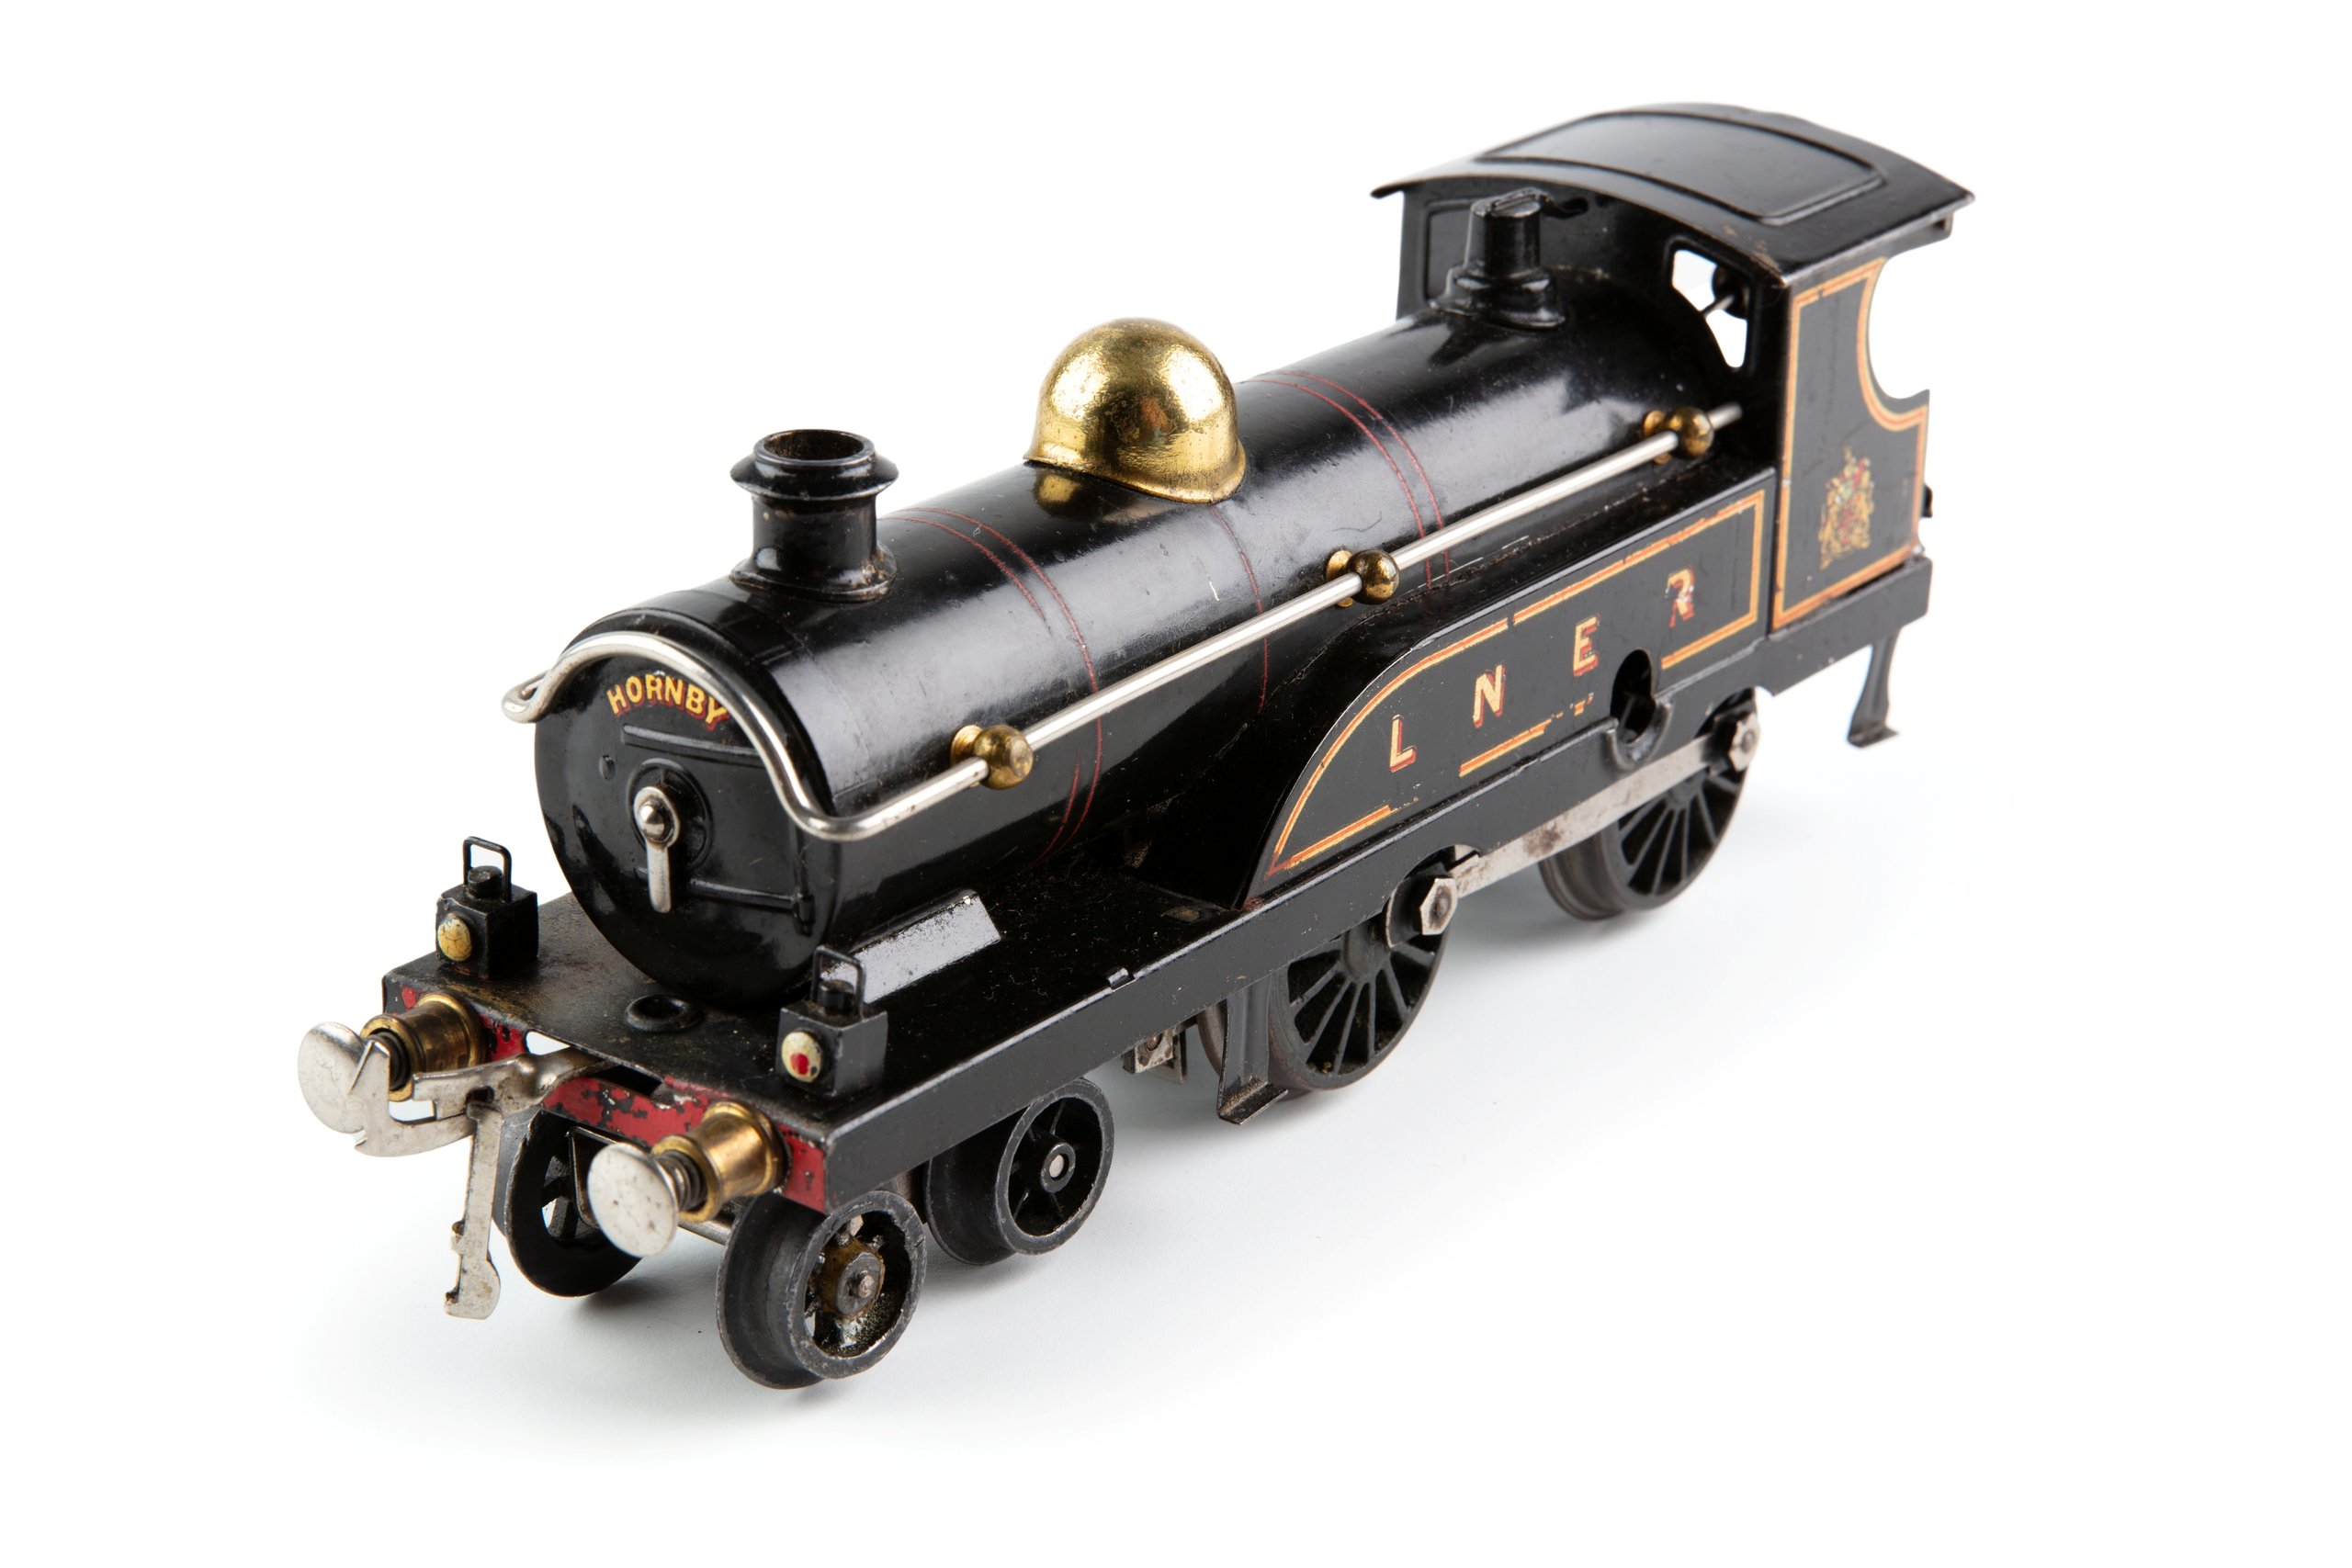 Hornby No 2 steam locomotive